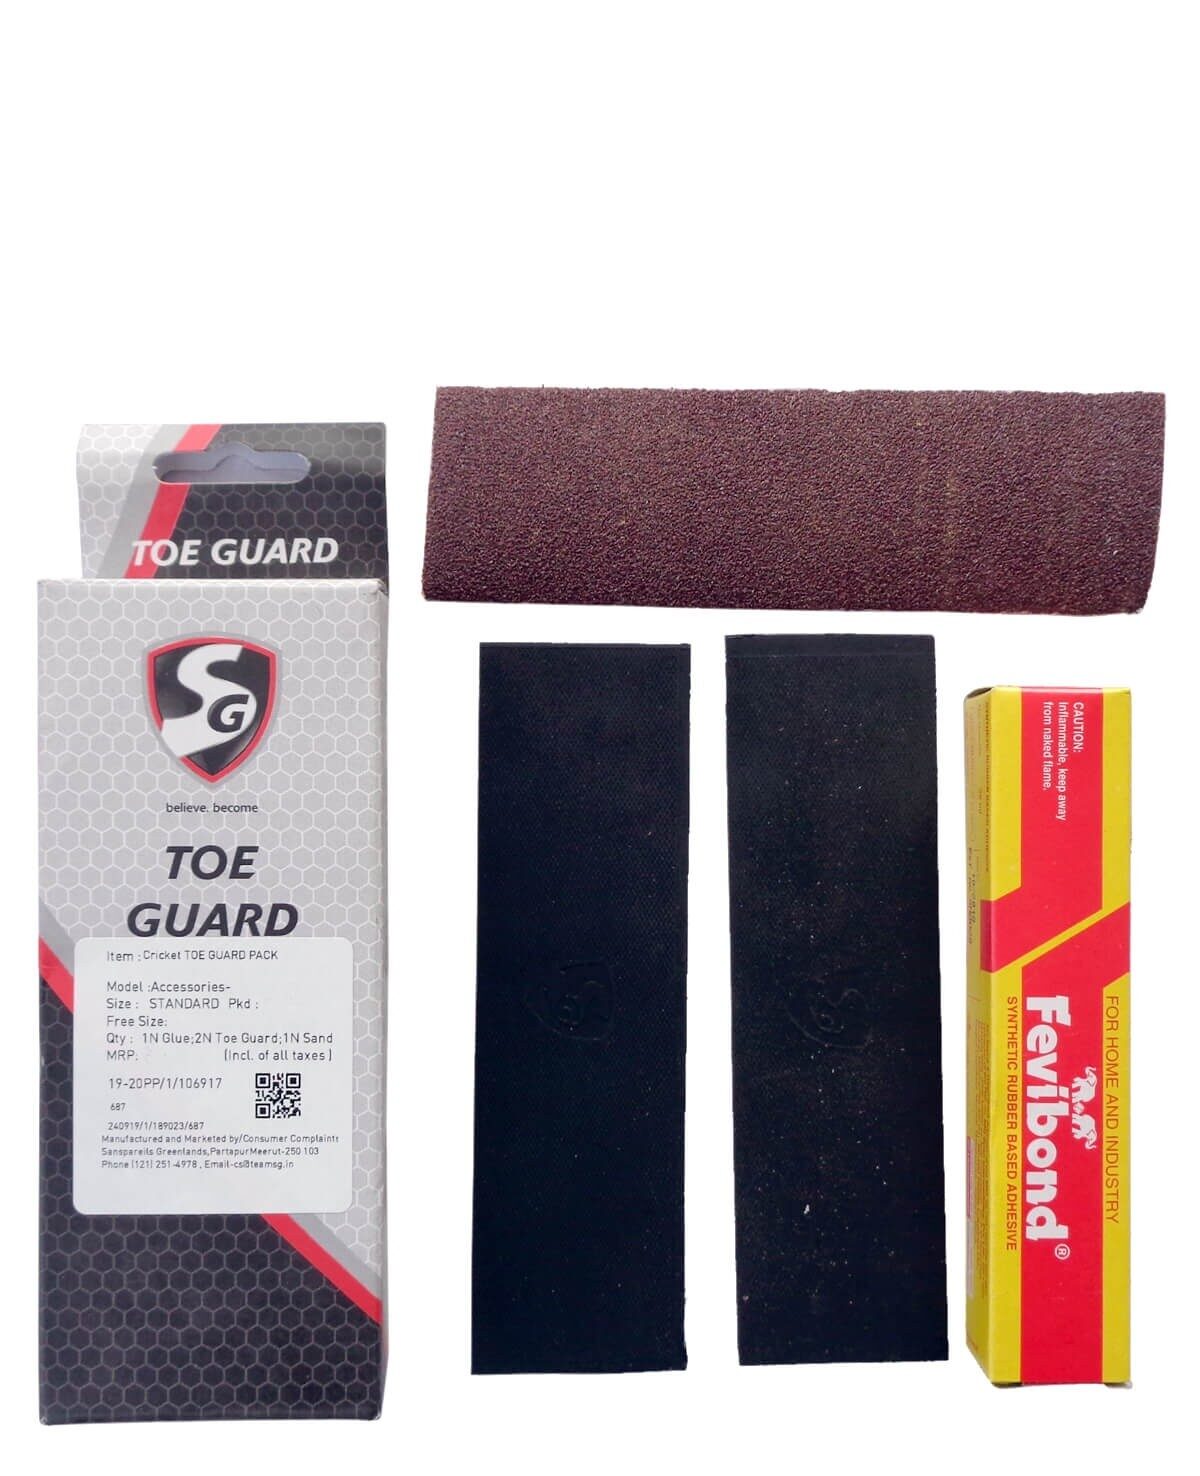 SG Toe guard kit